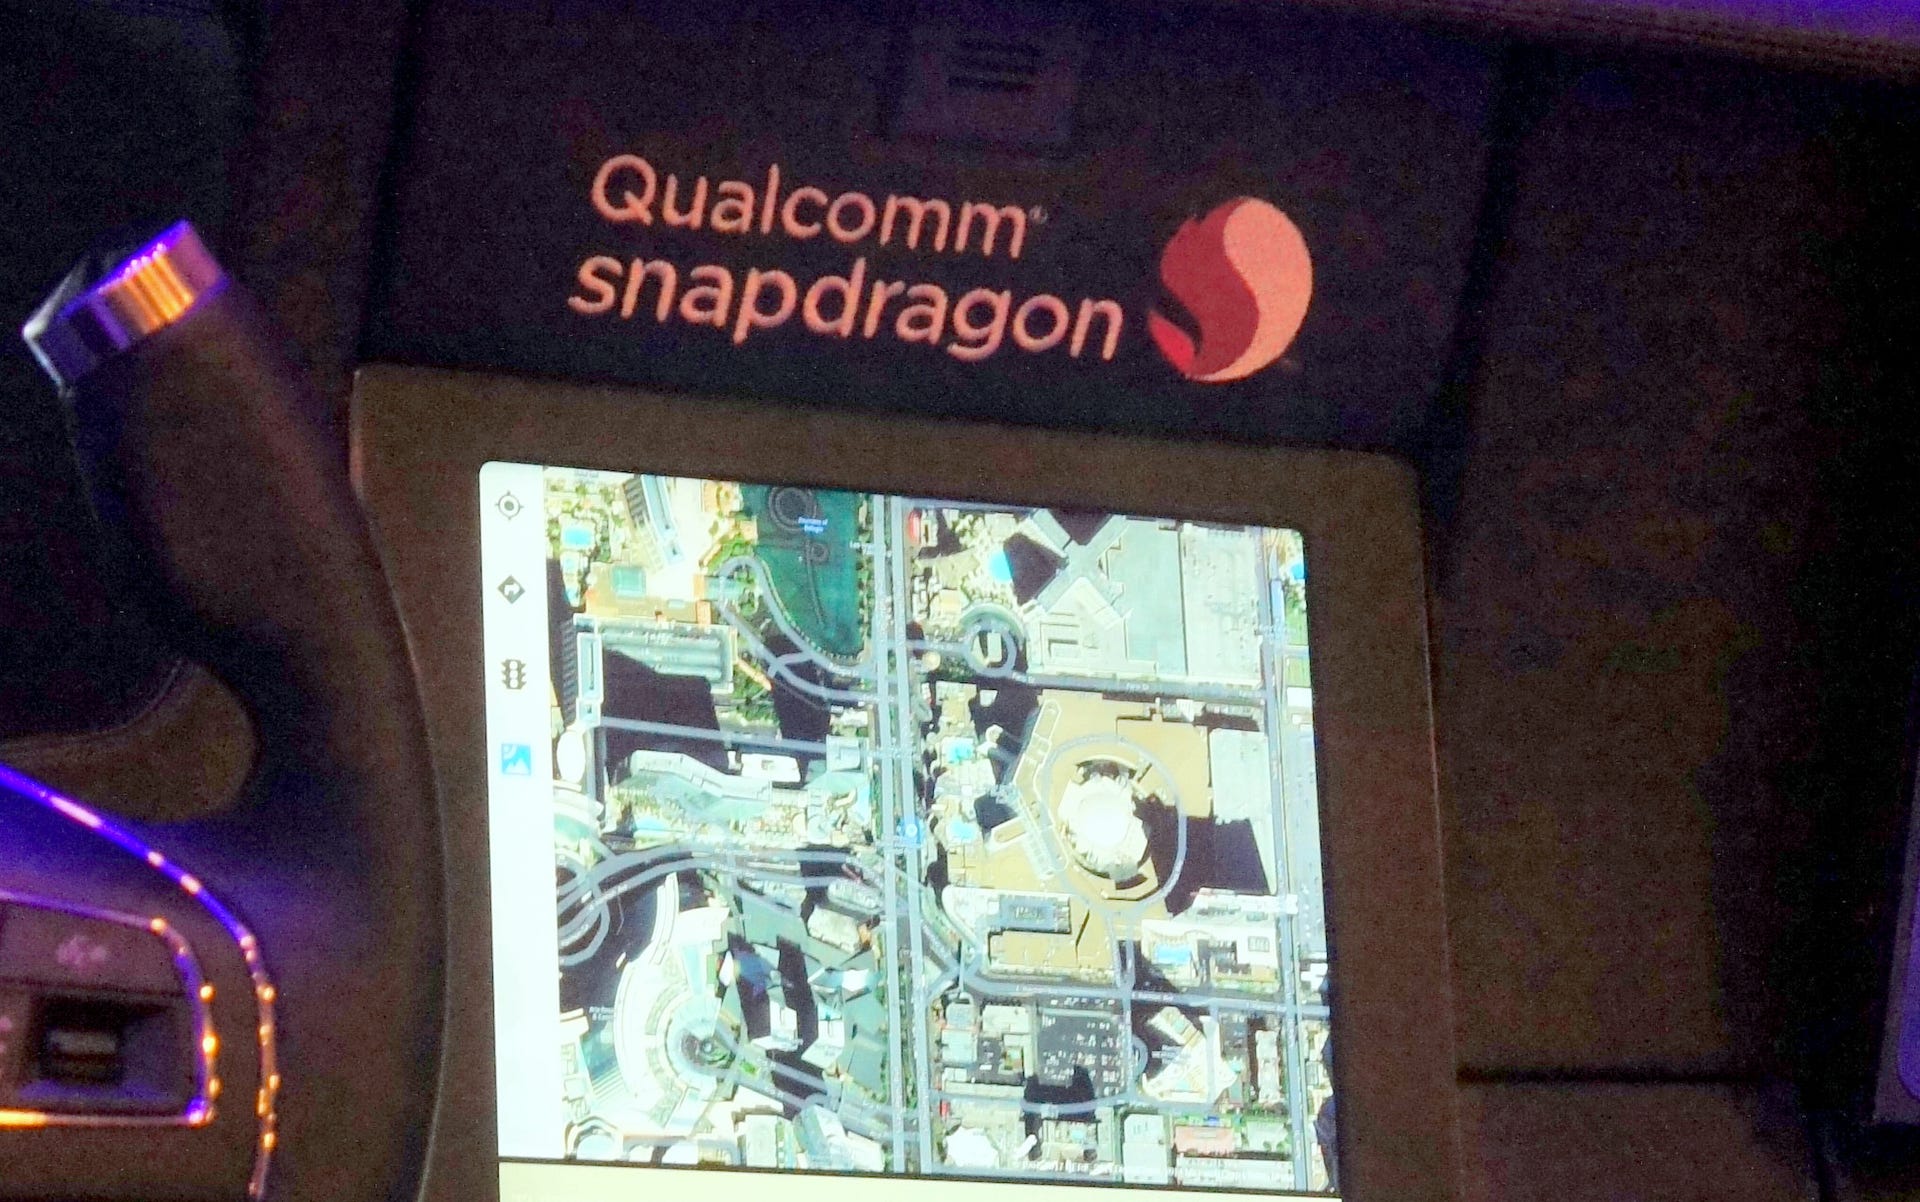 Qualcomm SnapDragon dashboard